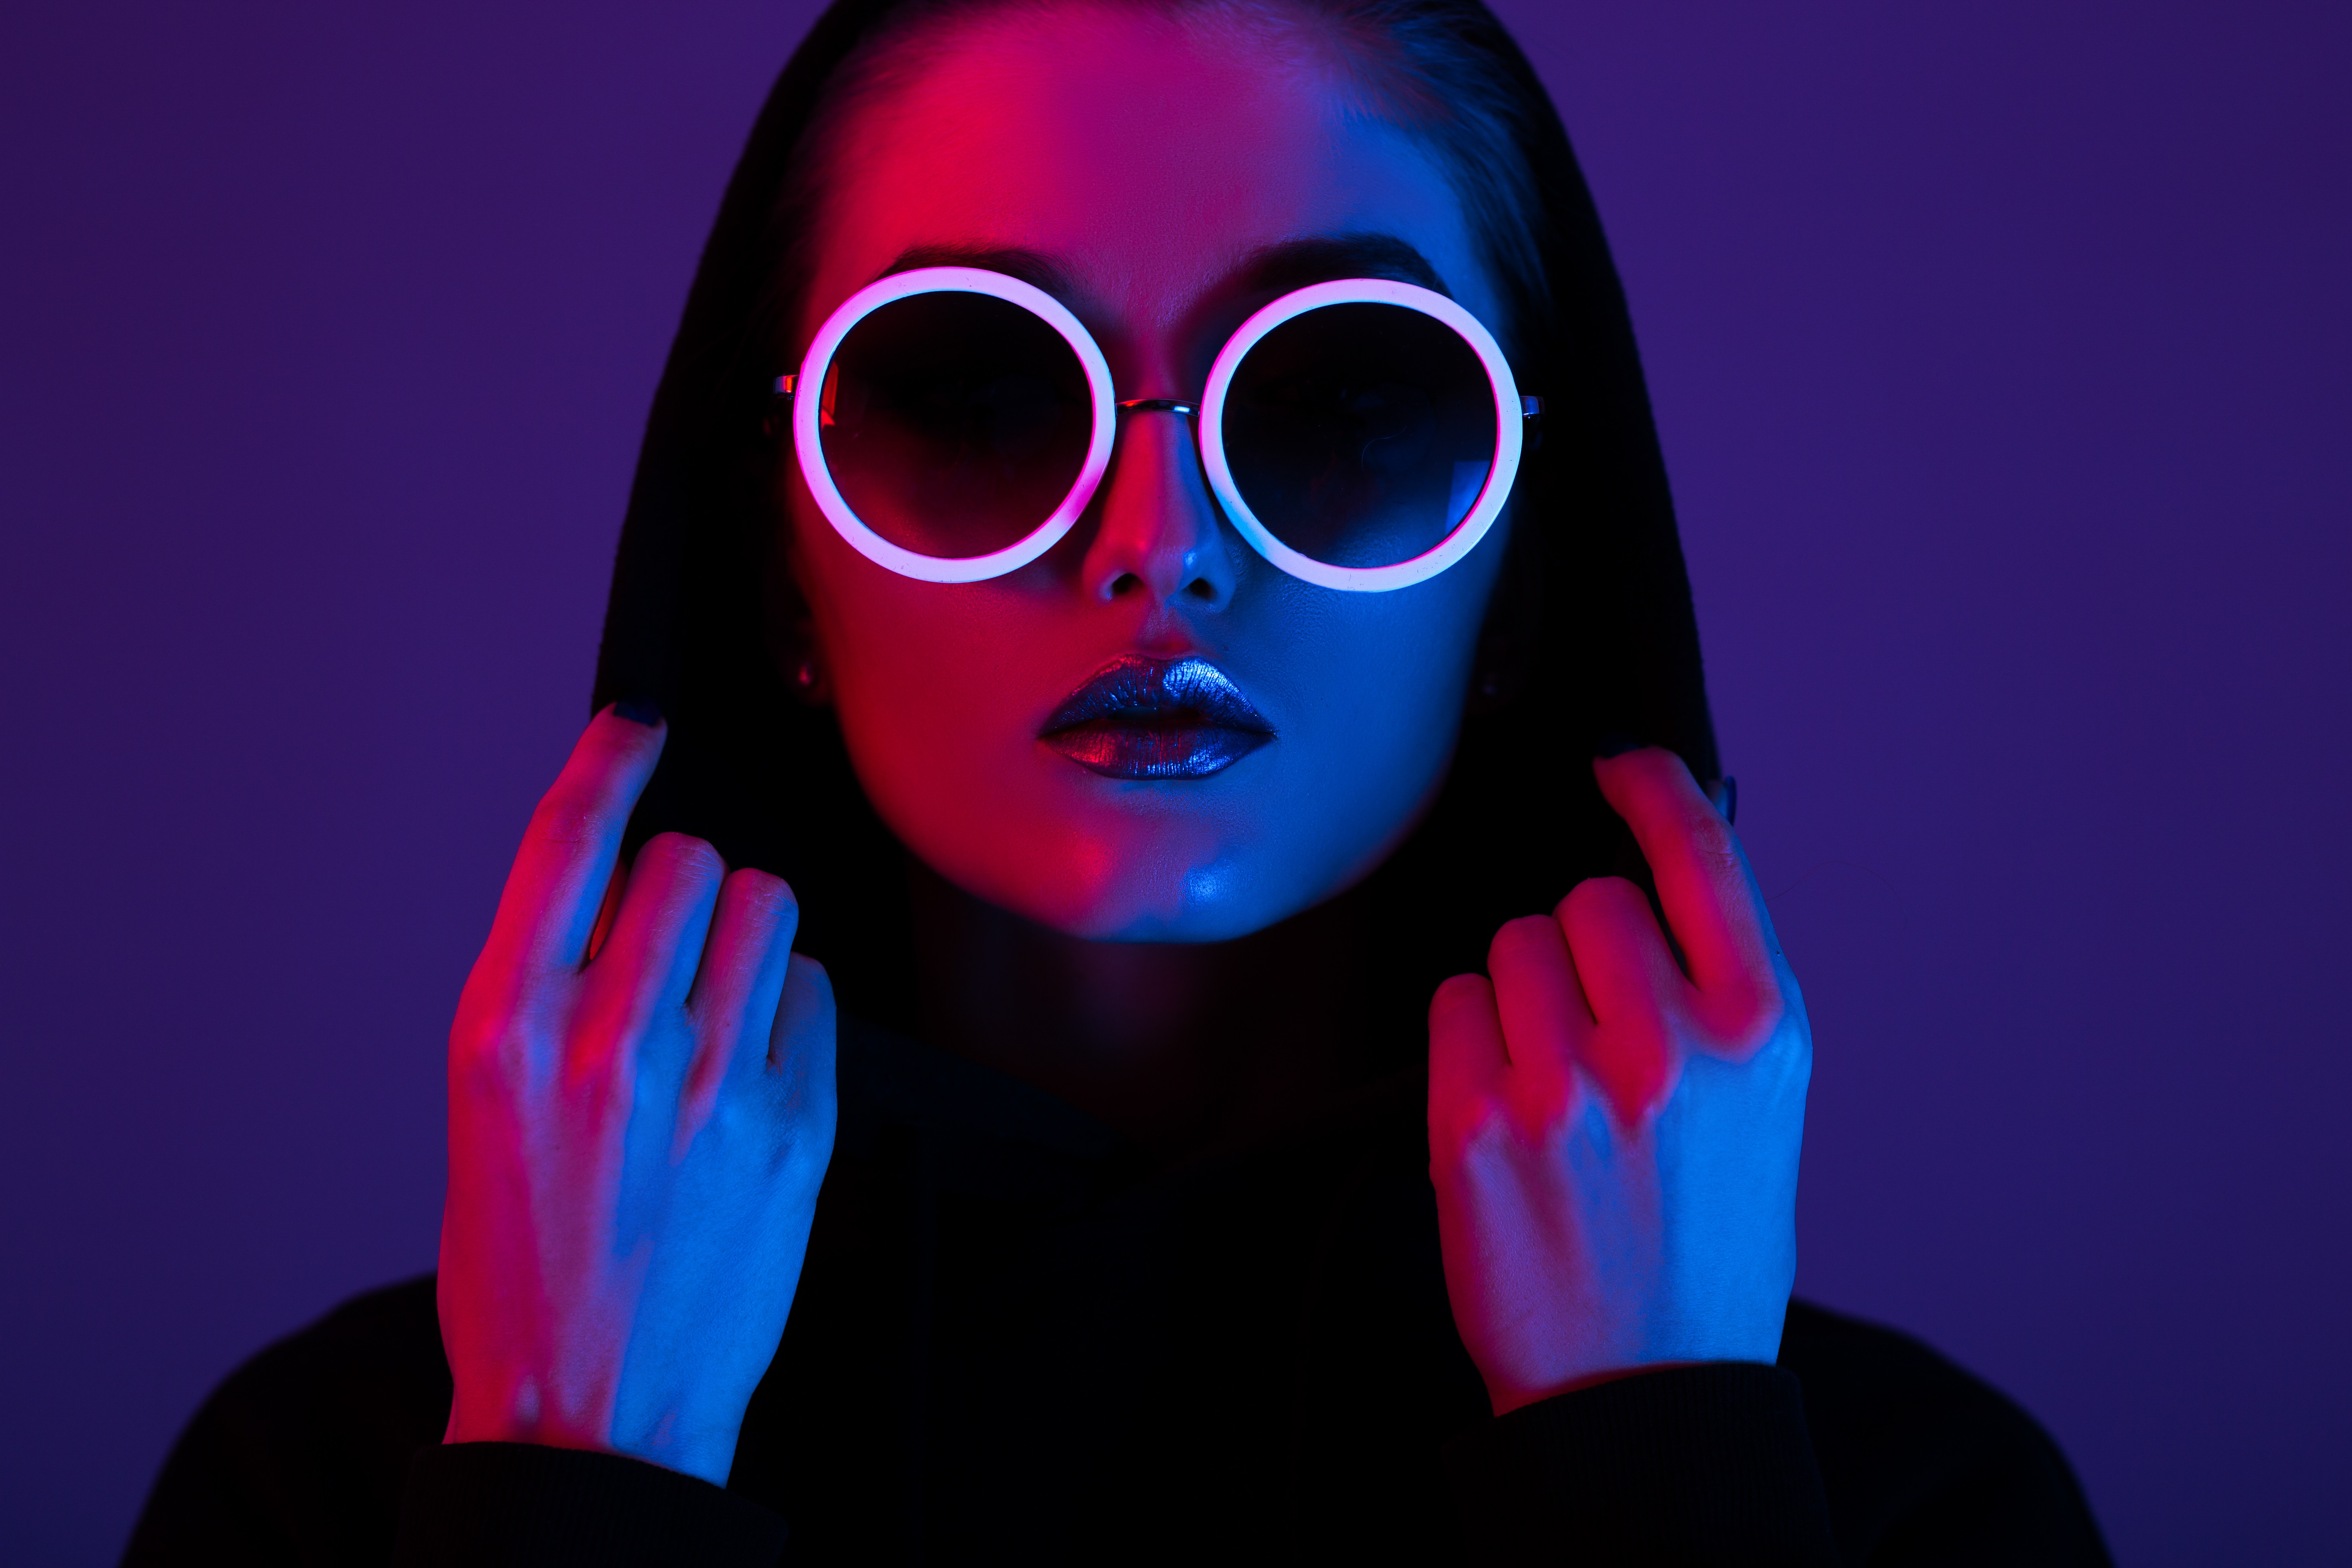 Women Neon Sunglasses Lights Red Blue Hoods Portrait Violet Makeup Closeup Face 5472x3648